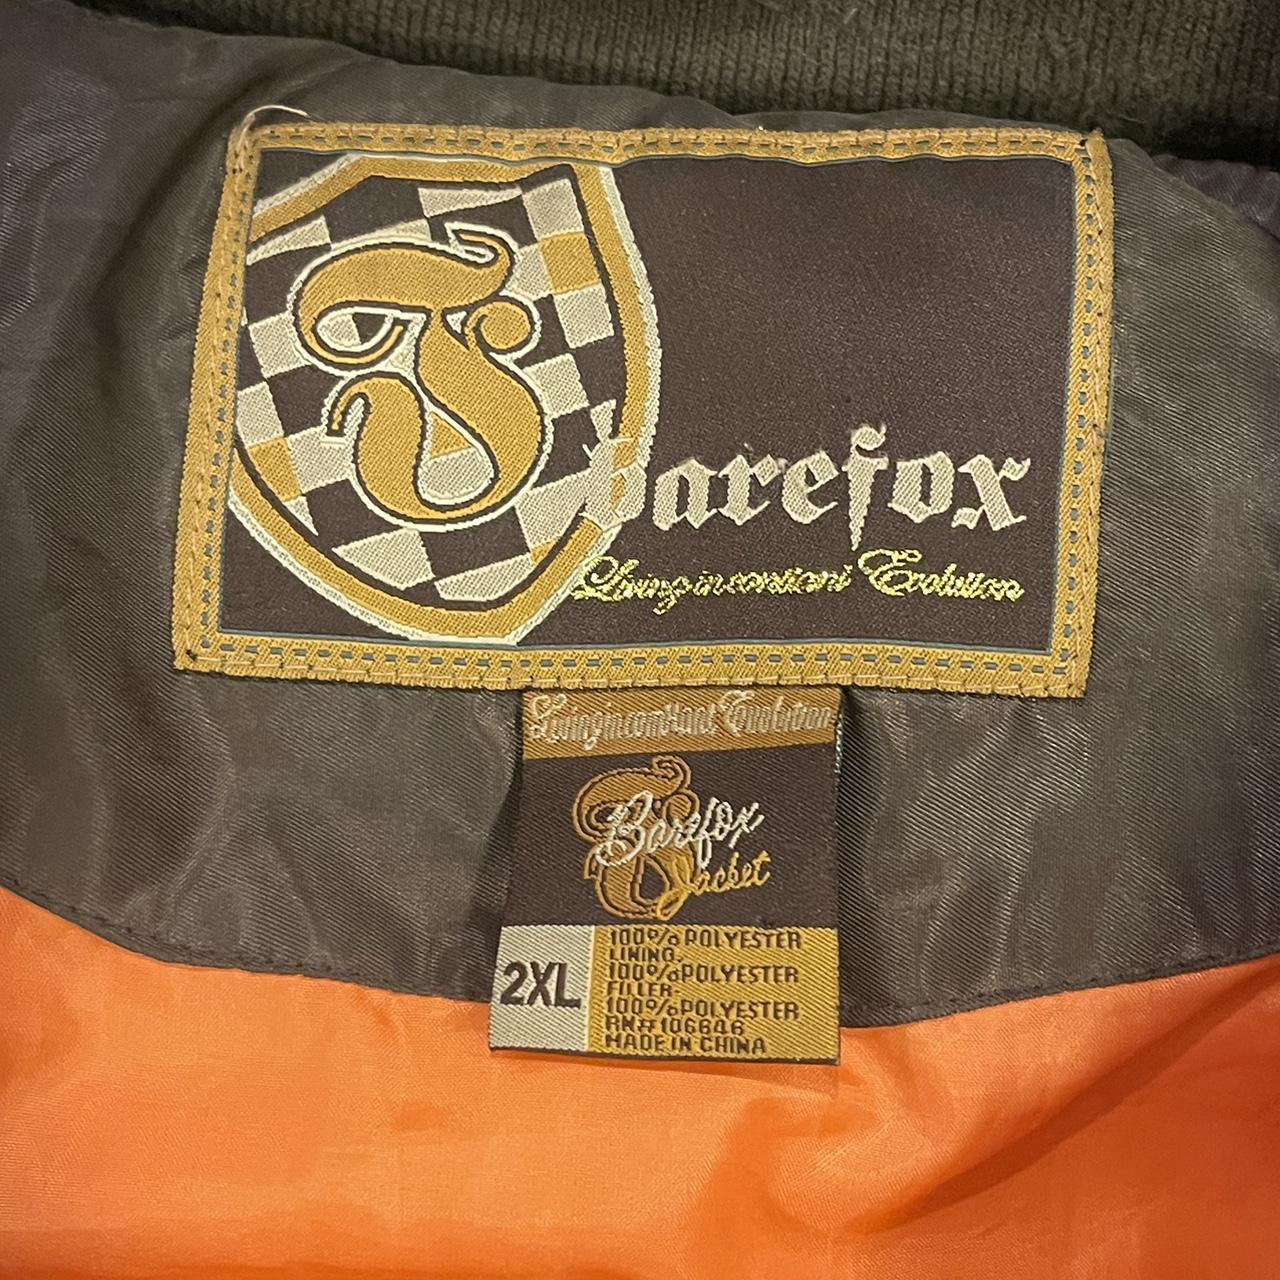 Bare Fox Flight Jacket Size 2XL Vintage